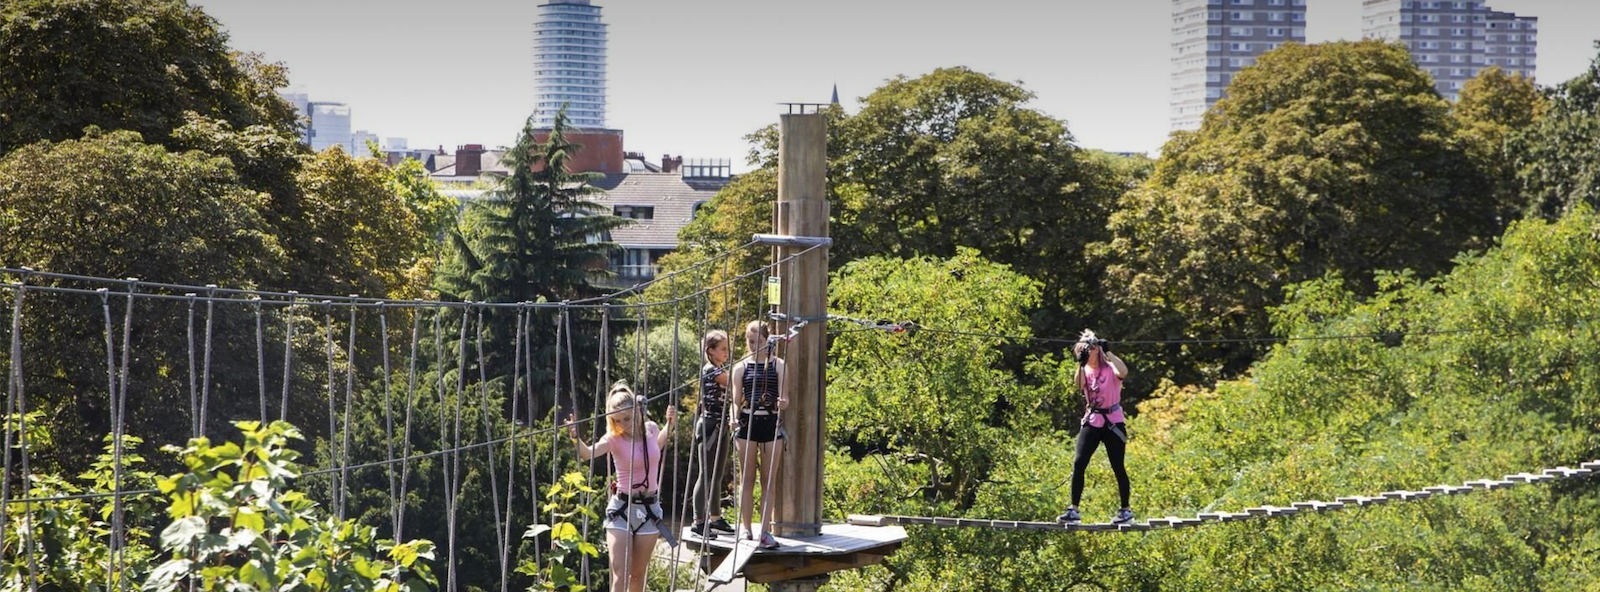 Go Ape Battersea Park – Summer activities